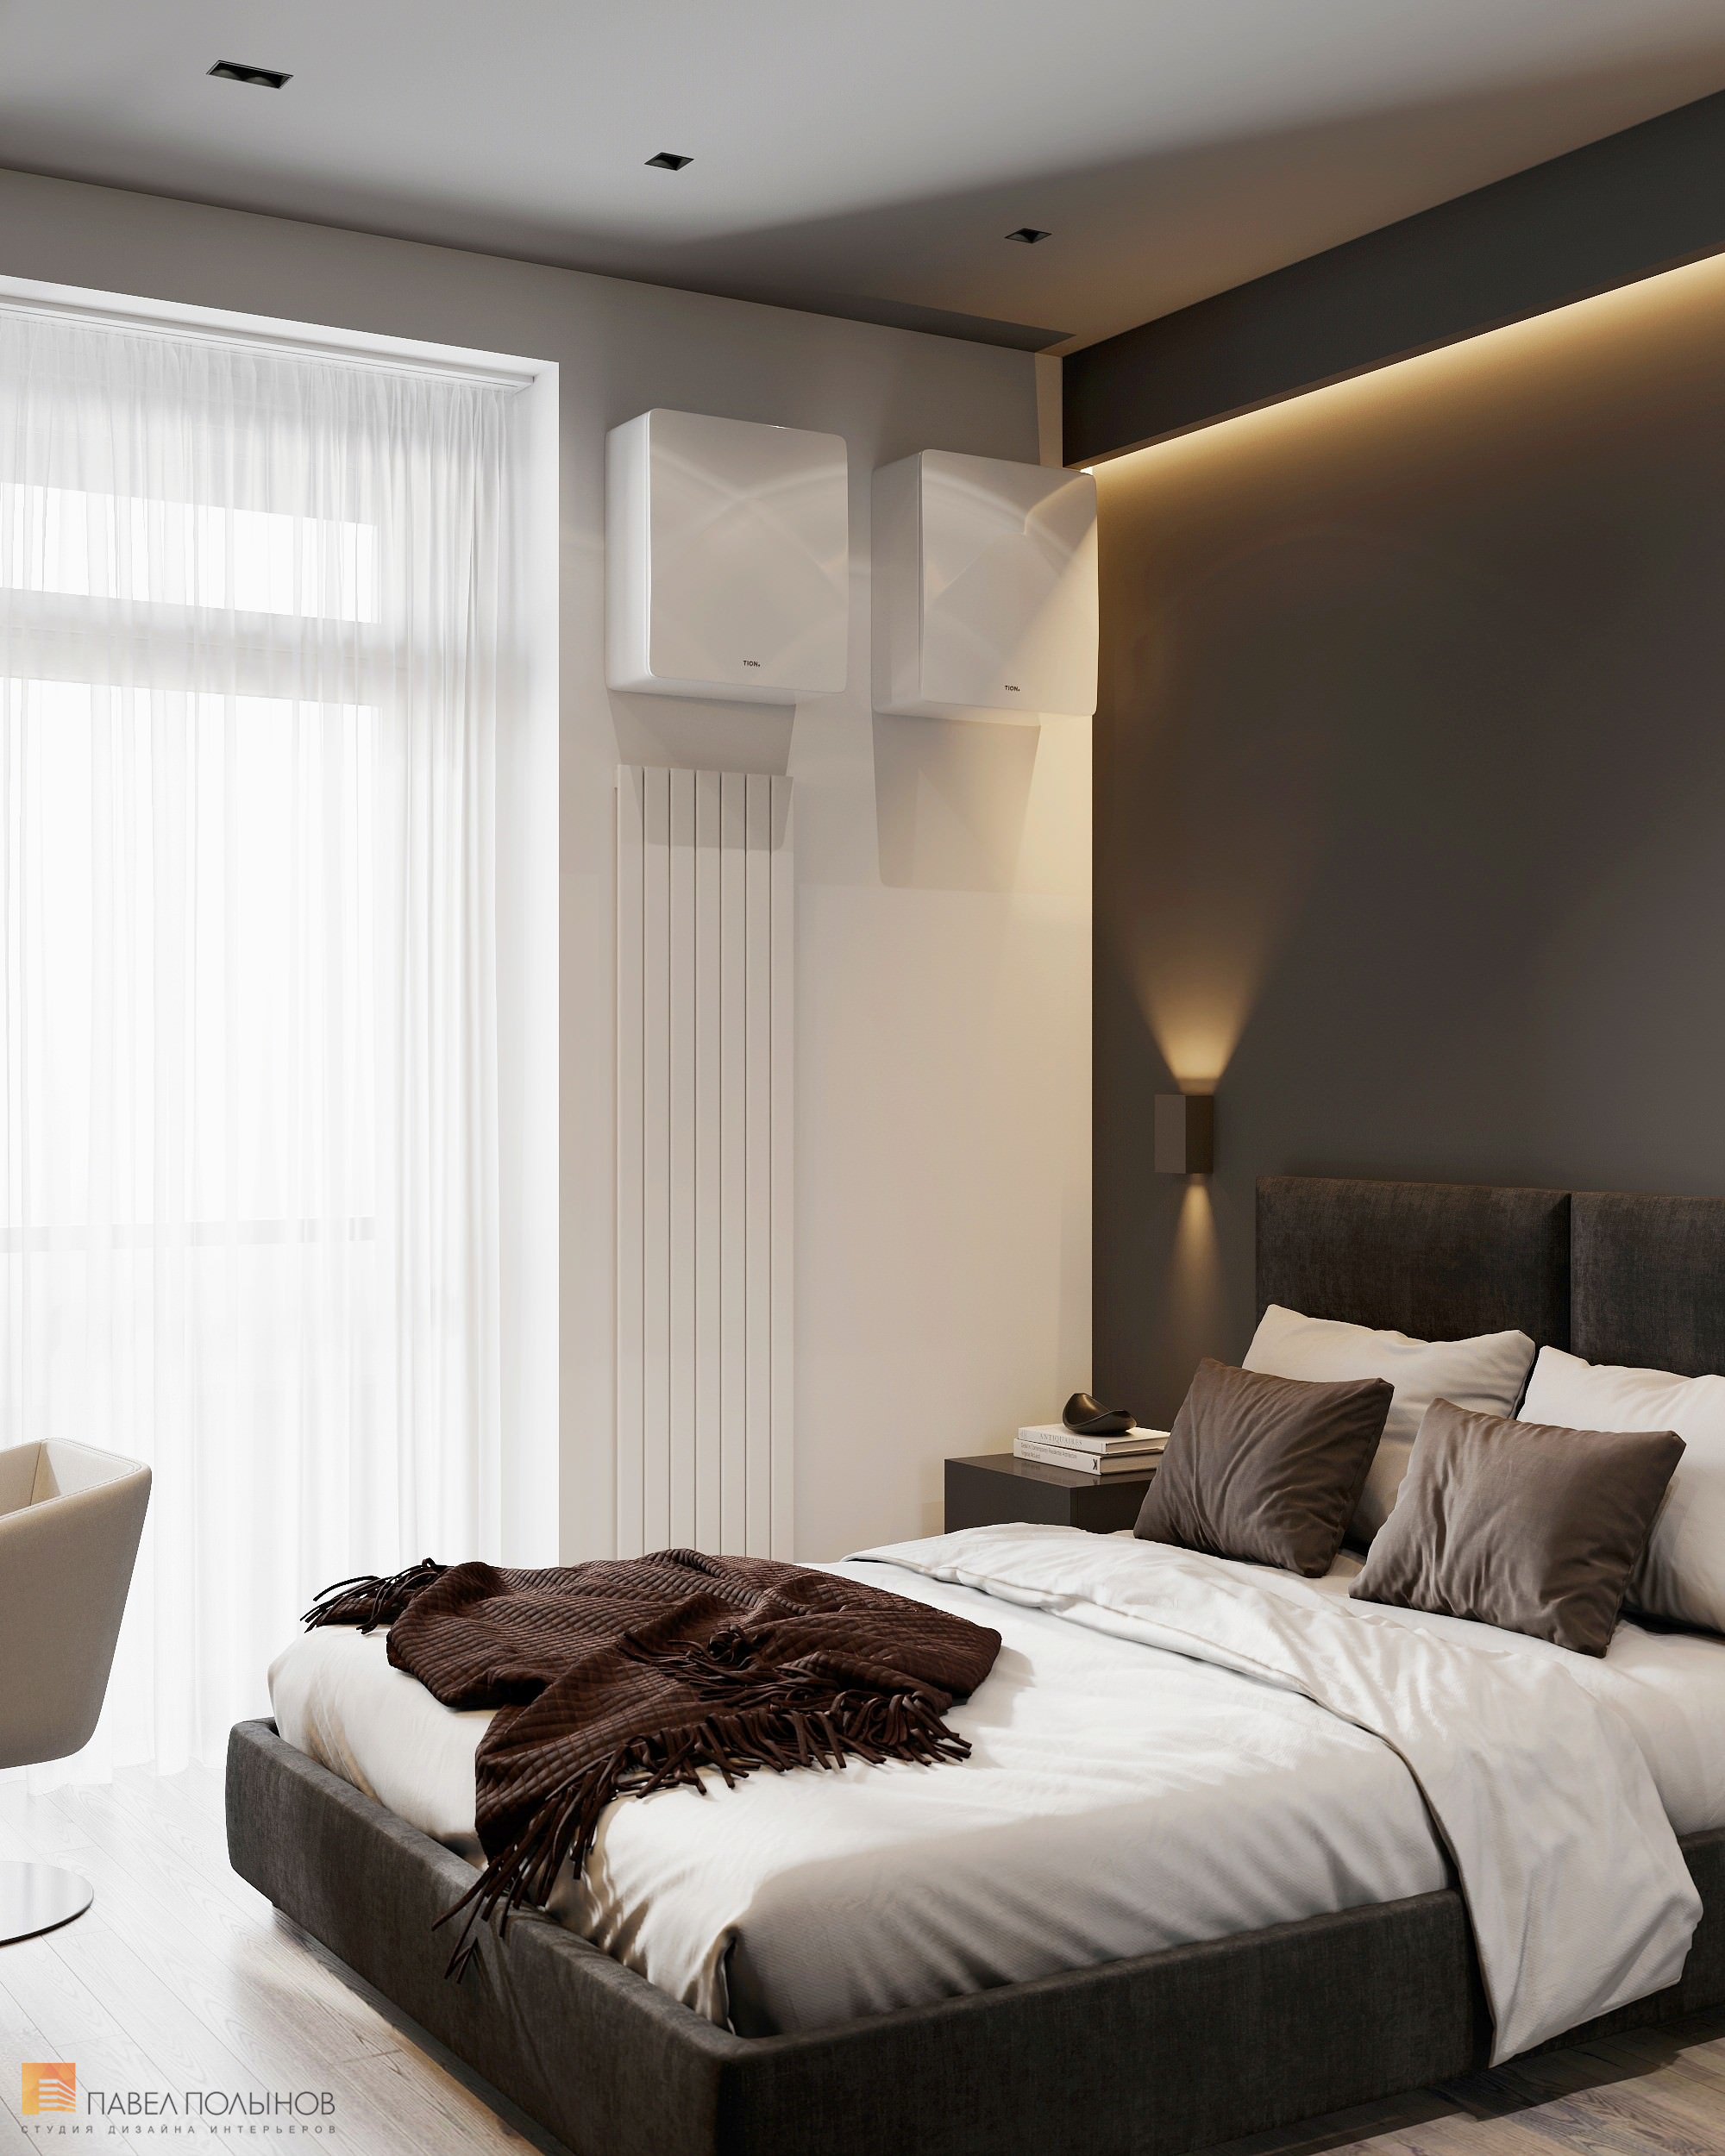 Фото спальня из проекта «Интерьер квартиры в современном стиле, ЖК «Символ», 64 кв.м.»